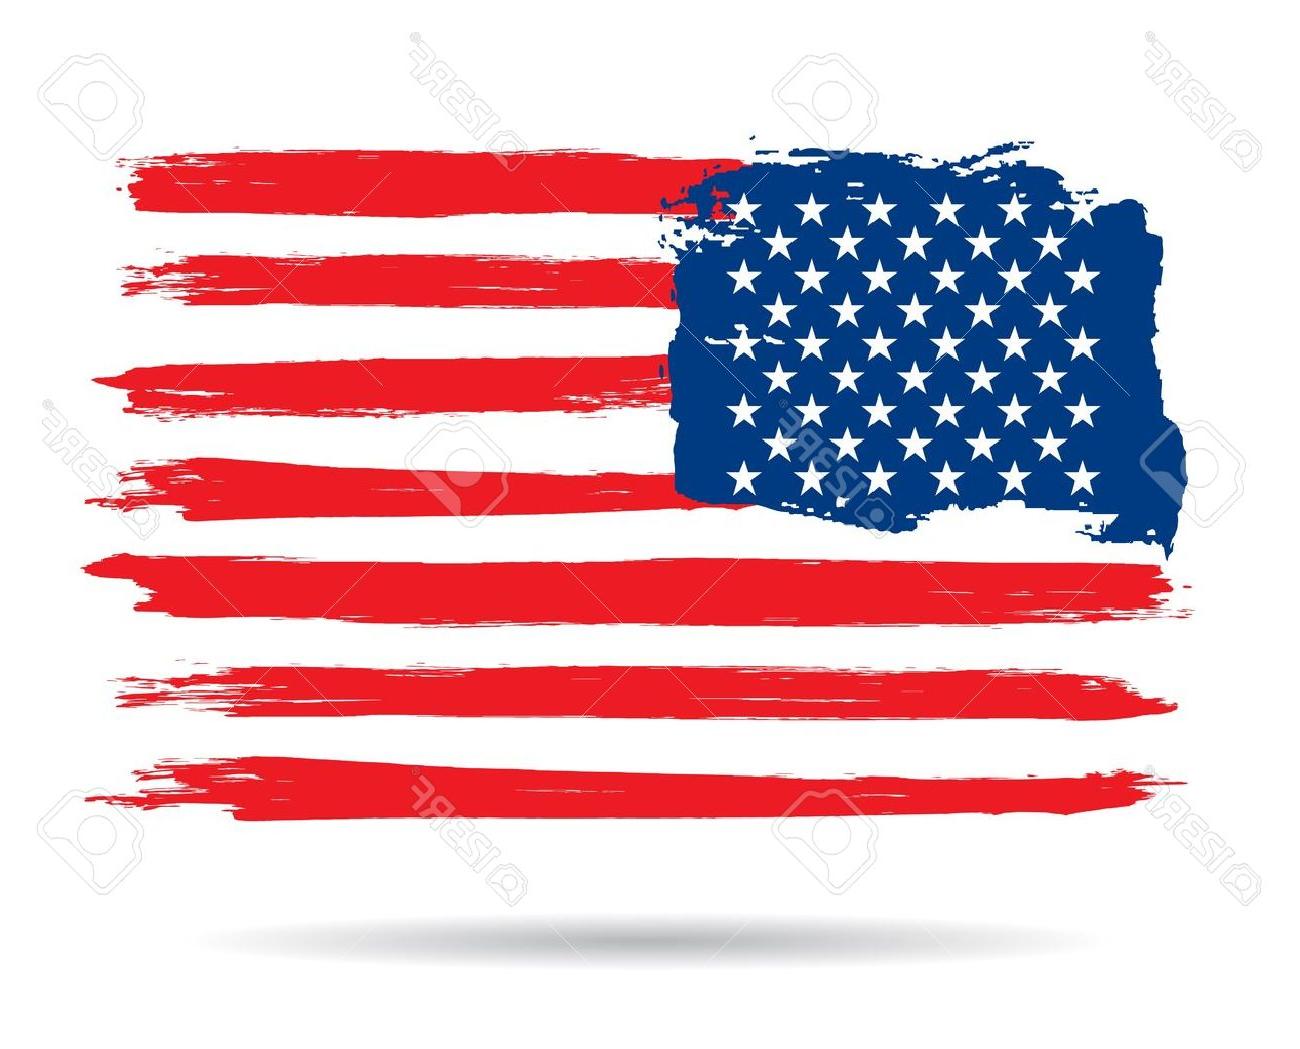 Unique american flag.